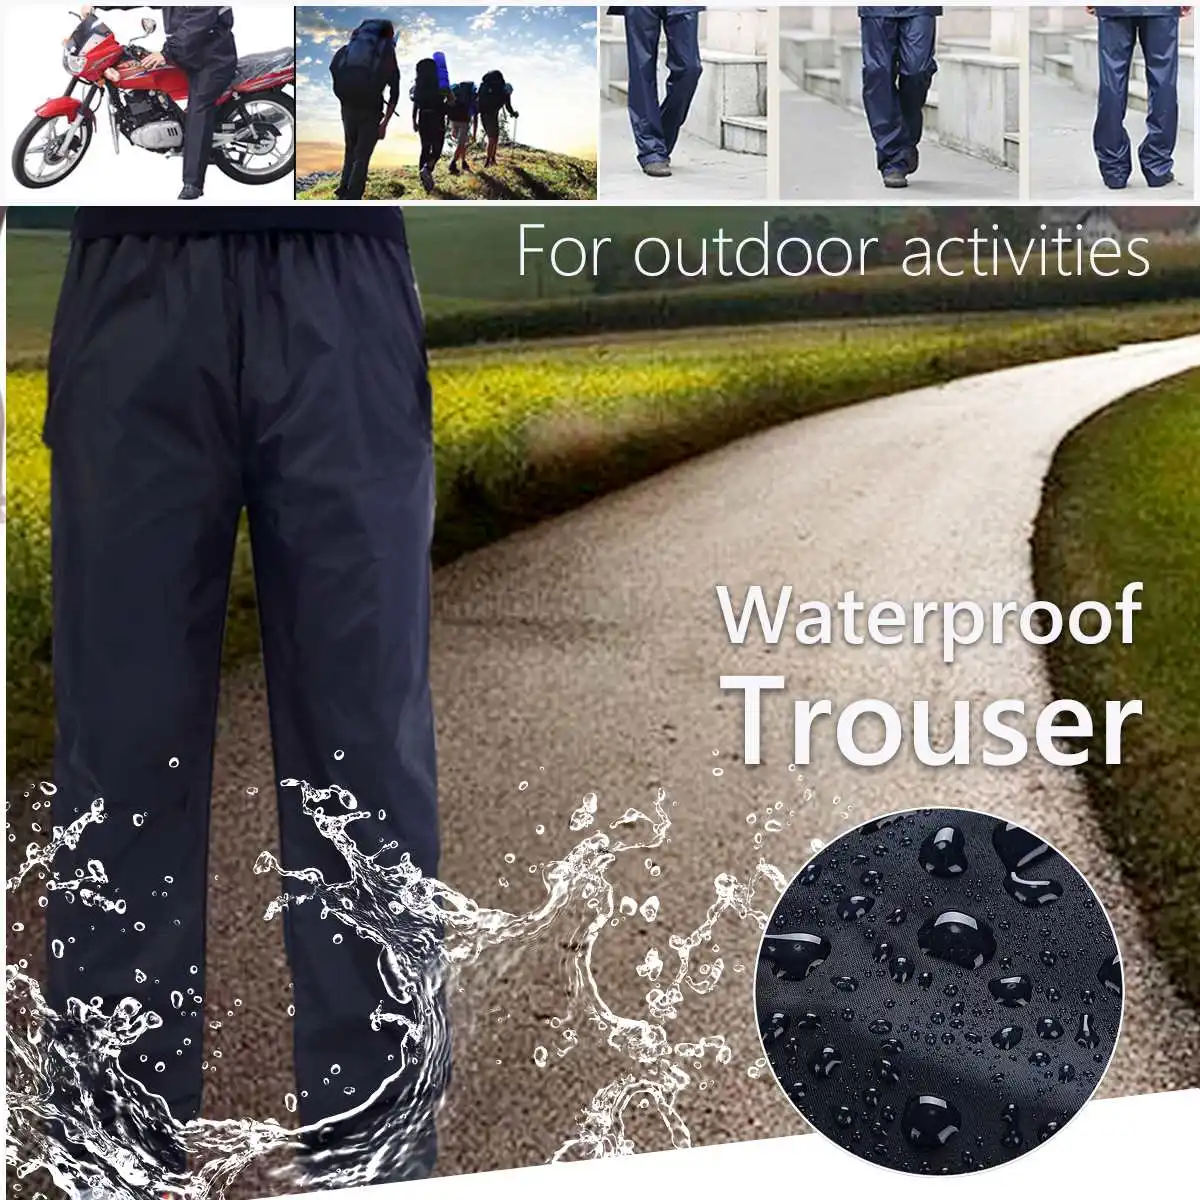 Непромокаемые непромокаемые брюки для женщин и мужчин, непромокаемые брюки для улицы, для мотоцикла, рыбалки, кемпинга, дождевики